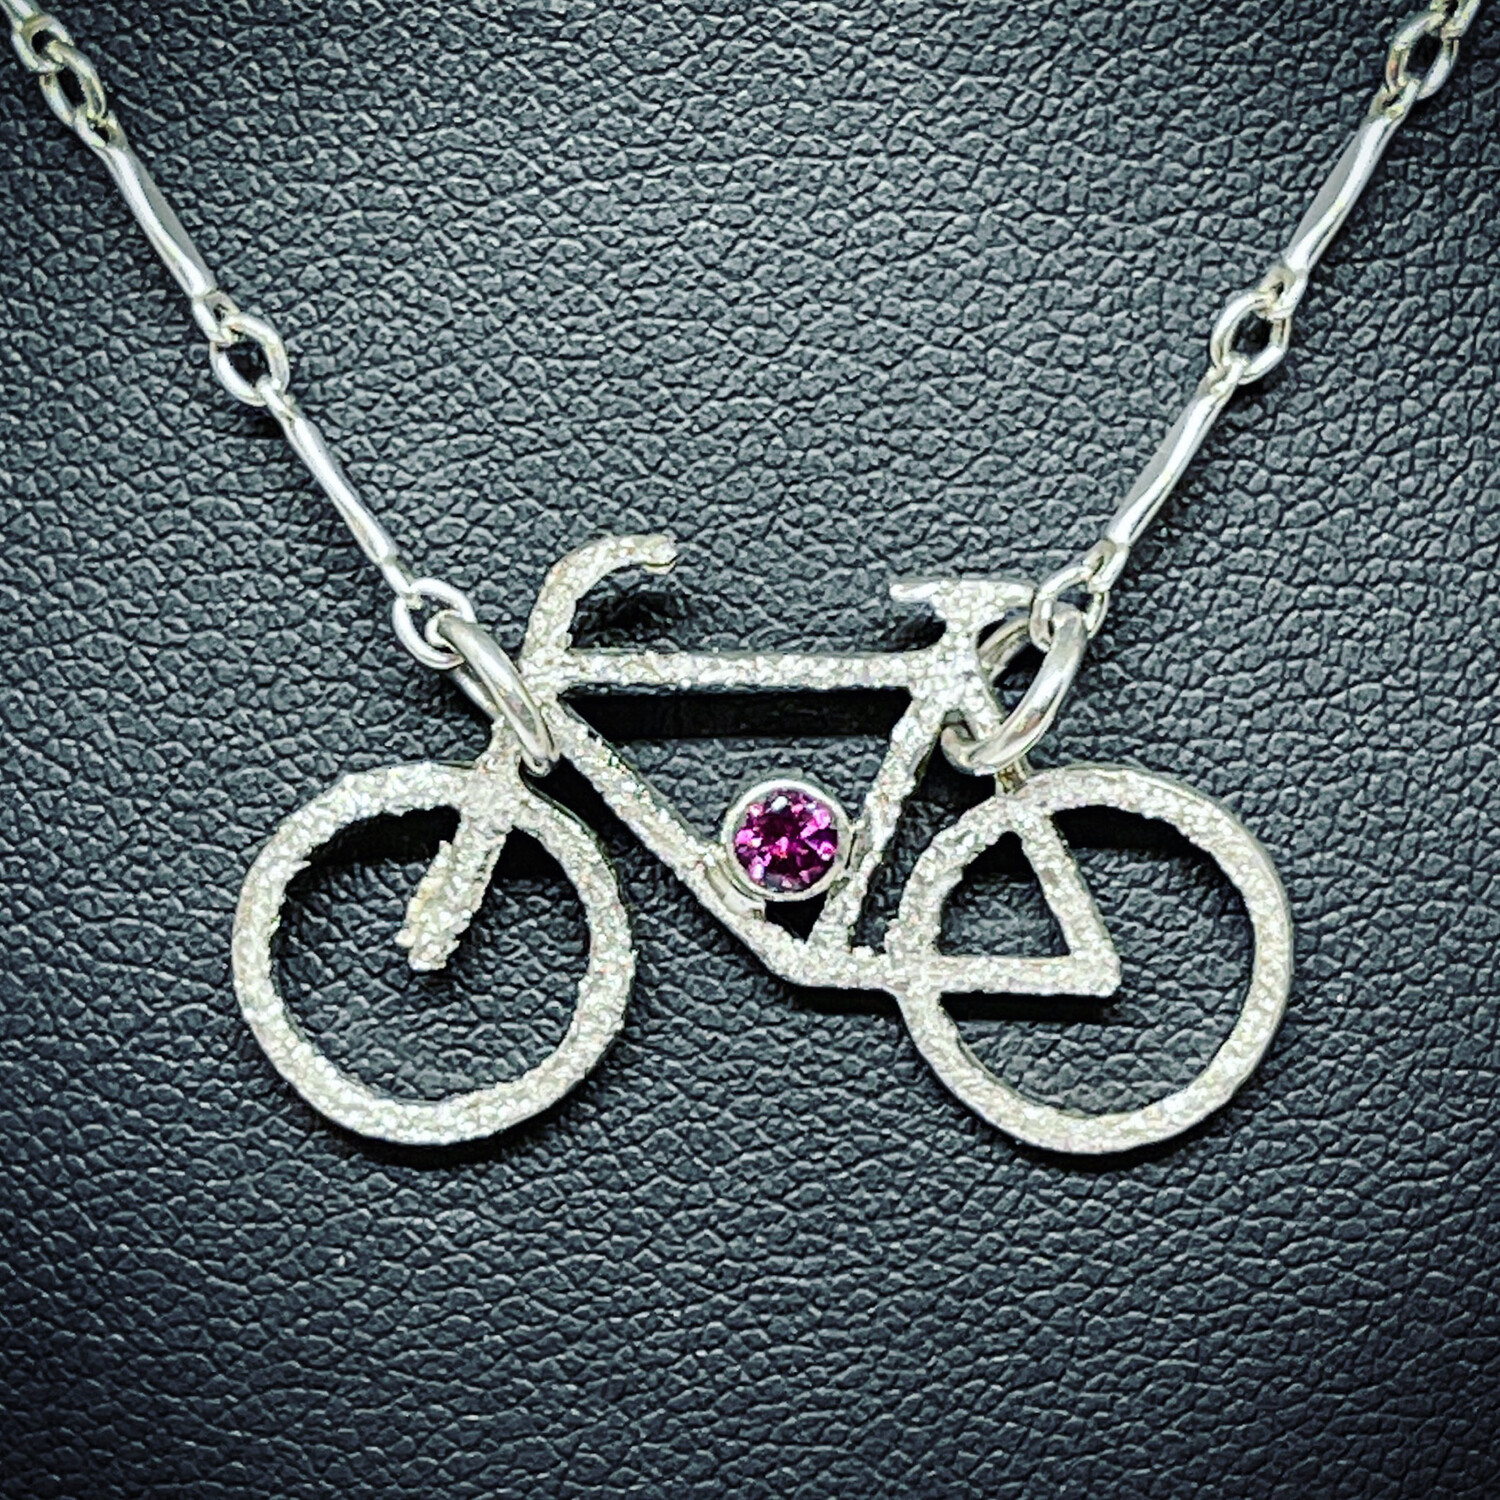 Bicycle Pendant w. Rhodolite Garnet